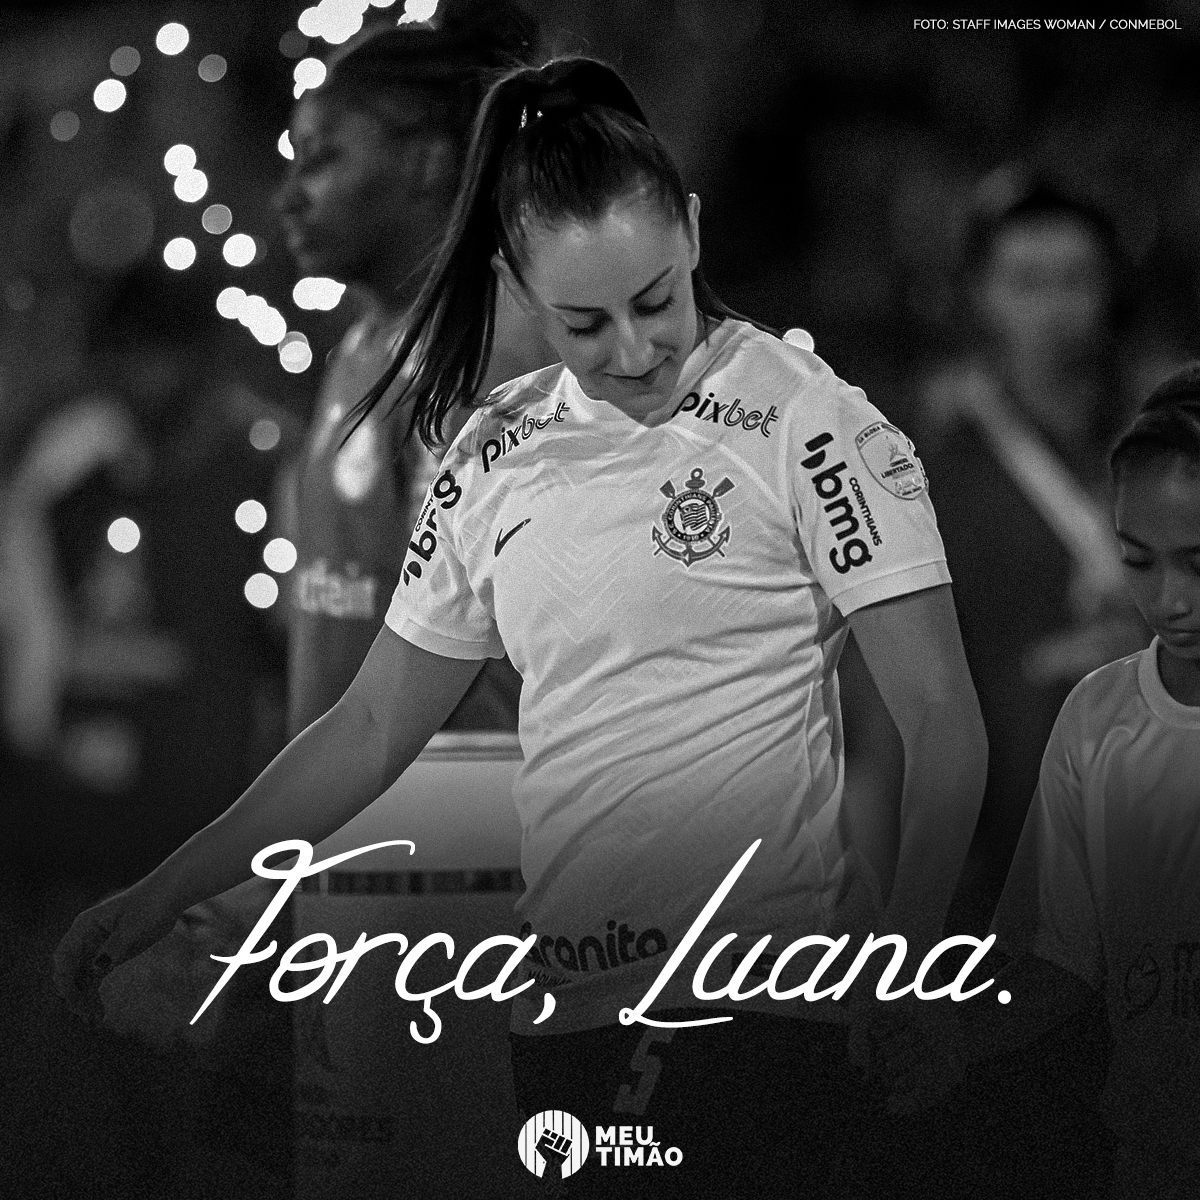 Desejamos toda força à Luana Bertolucci nessa recuperação. A Fiel estará sempre com você! 🖤